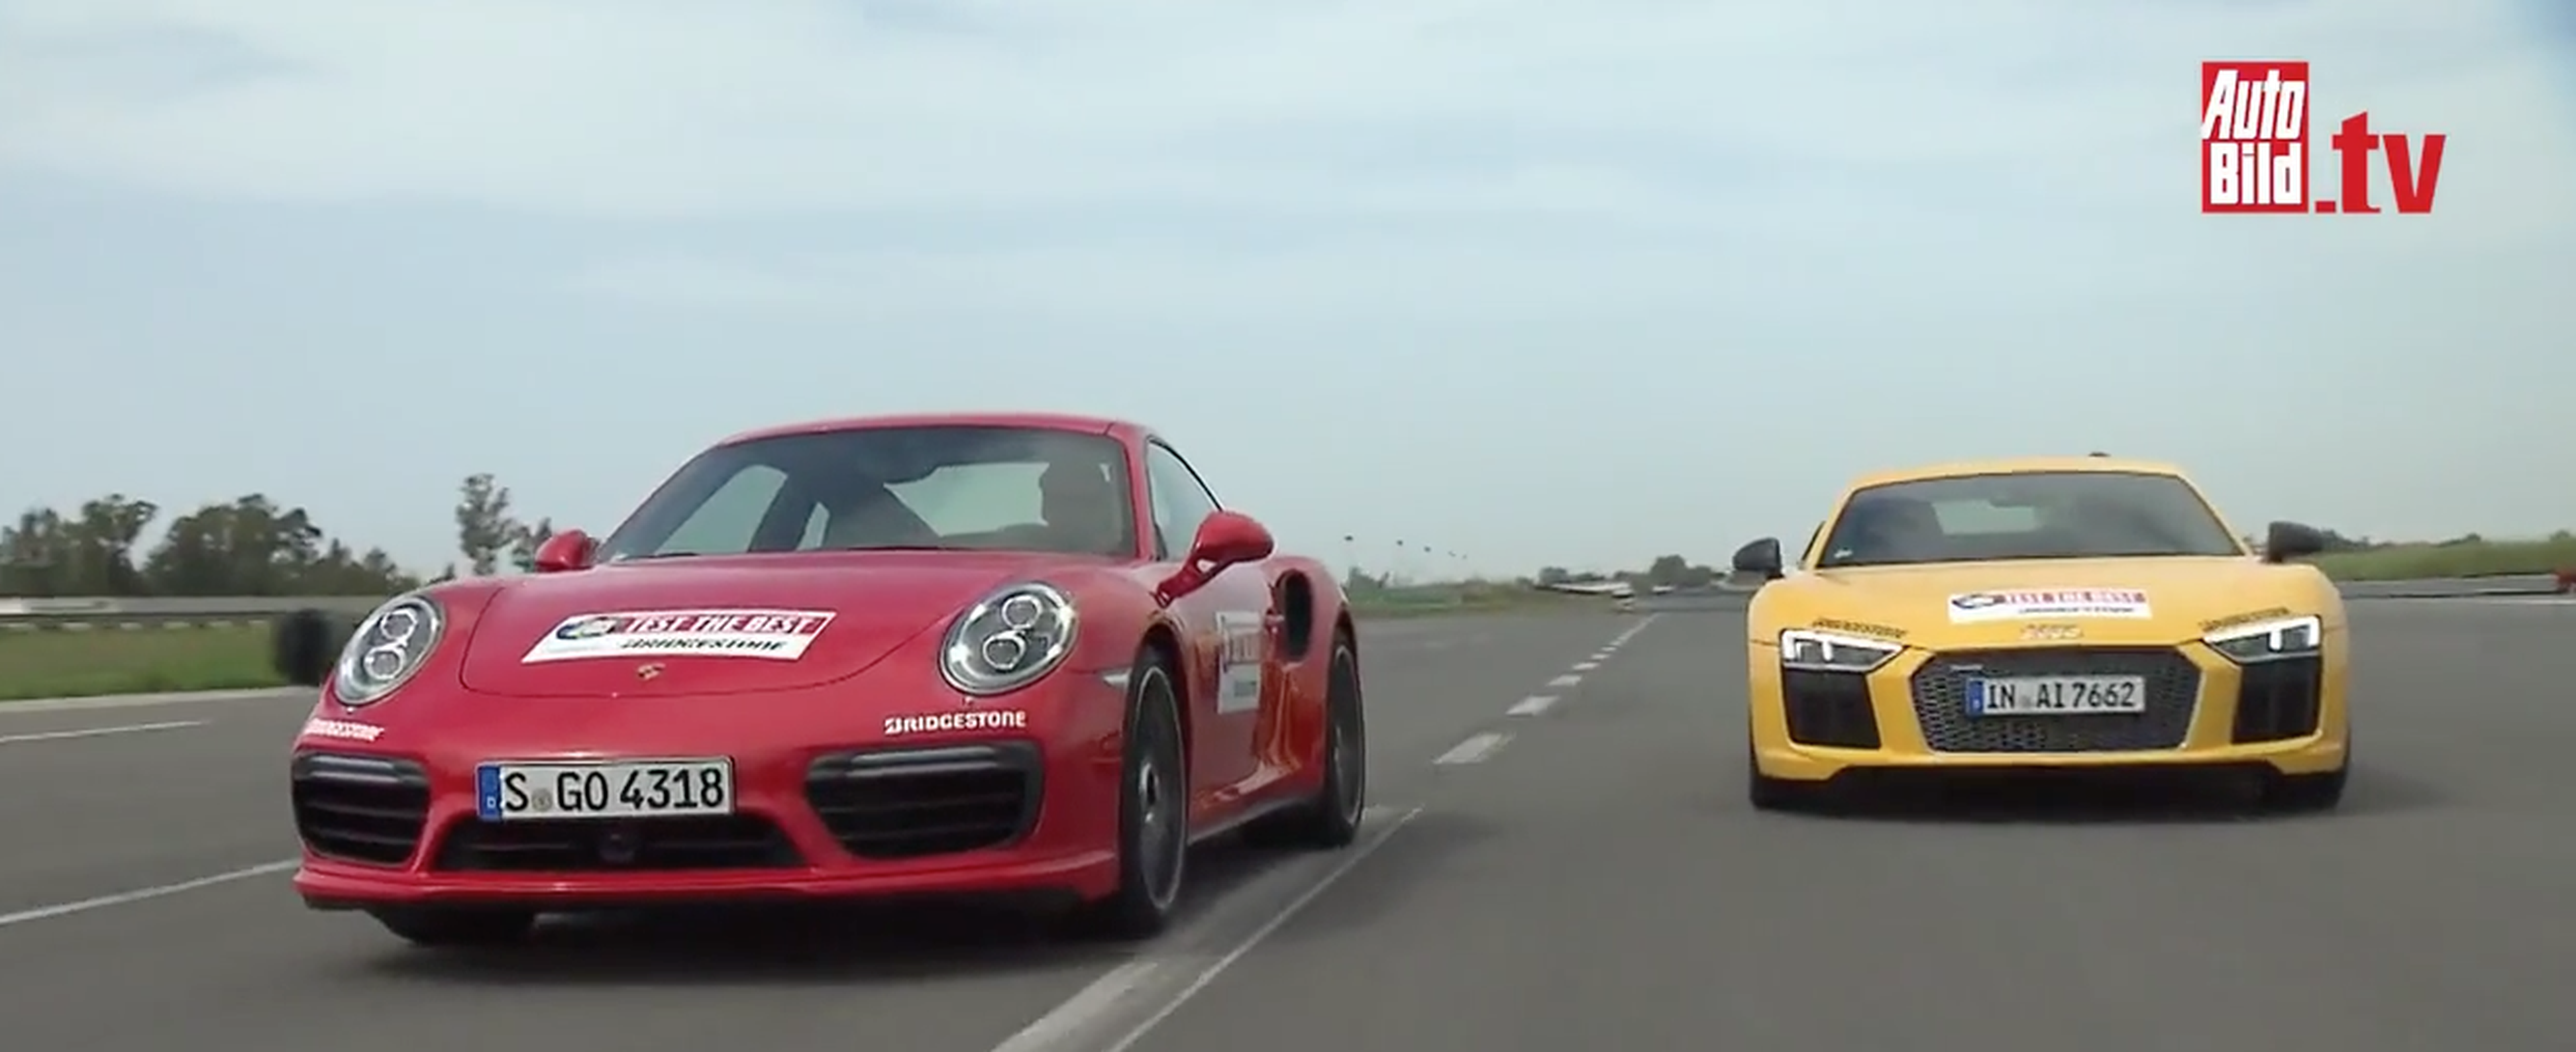 Cara a cara: Porsche 911 Turbo S contra Audi R8 V10